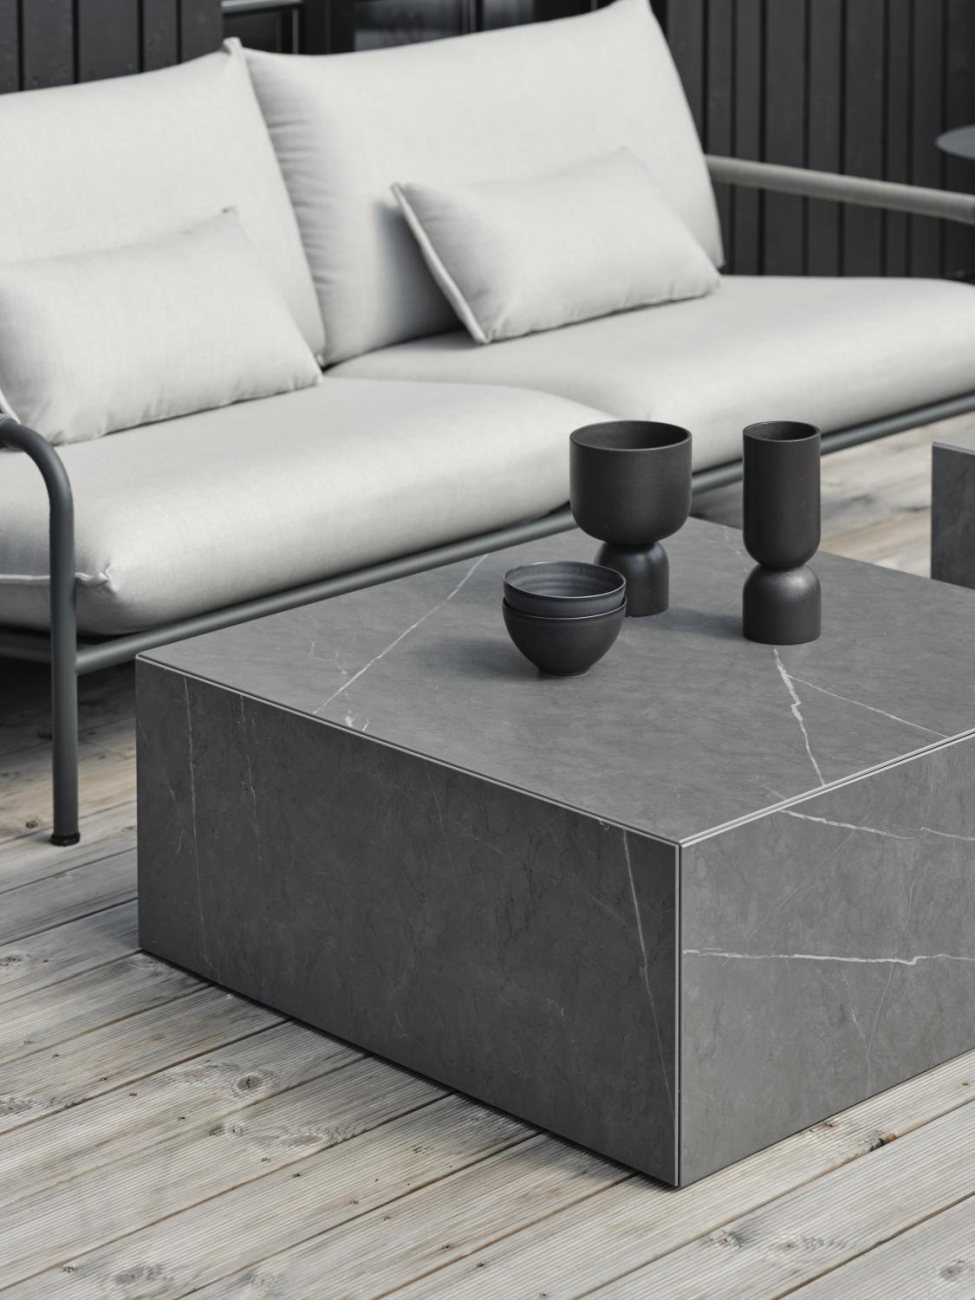 Das Gartensofa Lerberget überzeugt mit seinem modernen Design. Gefertigt wurde er aus Stoff, welcher einen grauen Farbton besitzt. Das Gestell ist aus Metall und hat eine Anthrazit Farbe. Die Sitzhöhe des Sofas beträgt 42 cm.